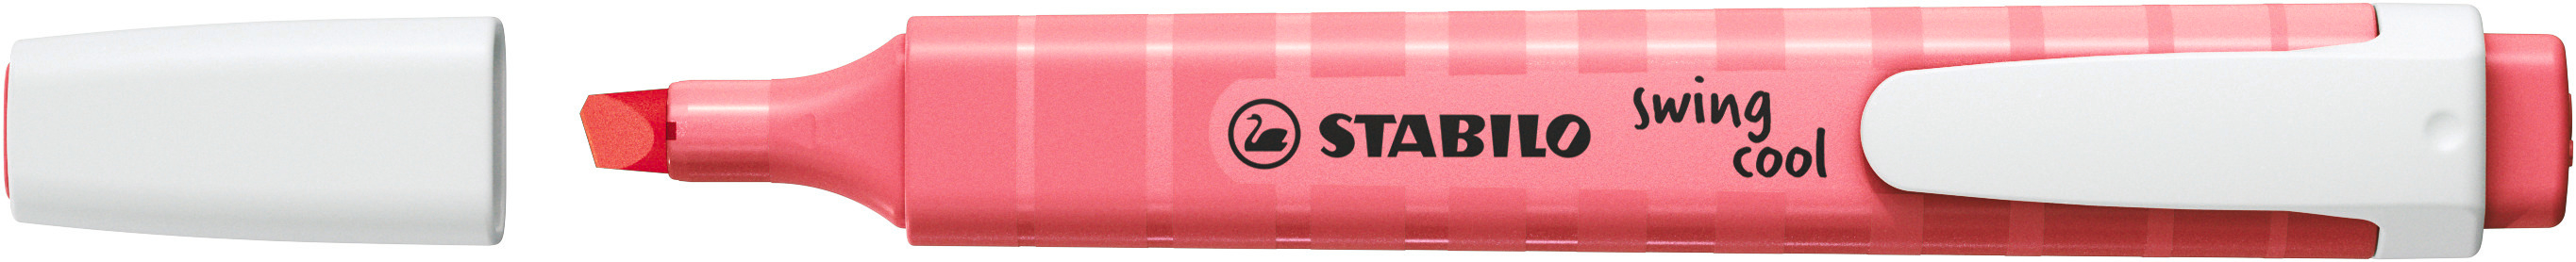 STABILO Textmarker Swing Cool 1-4mm 275/150-8 fleur de cerisier pastel fleur de cerisier pastel